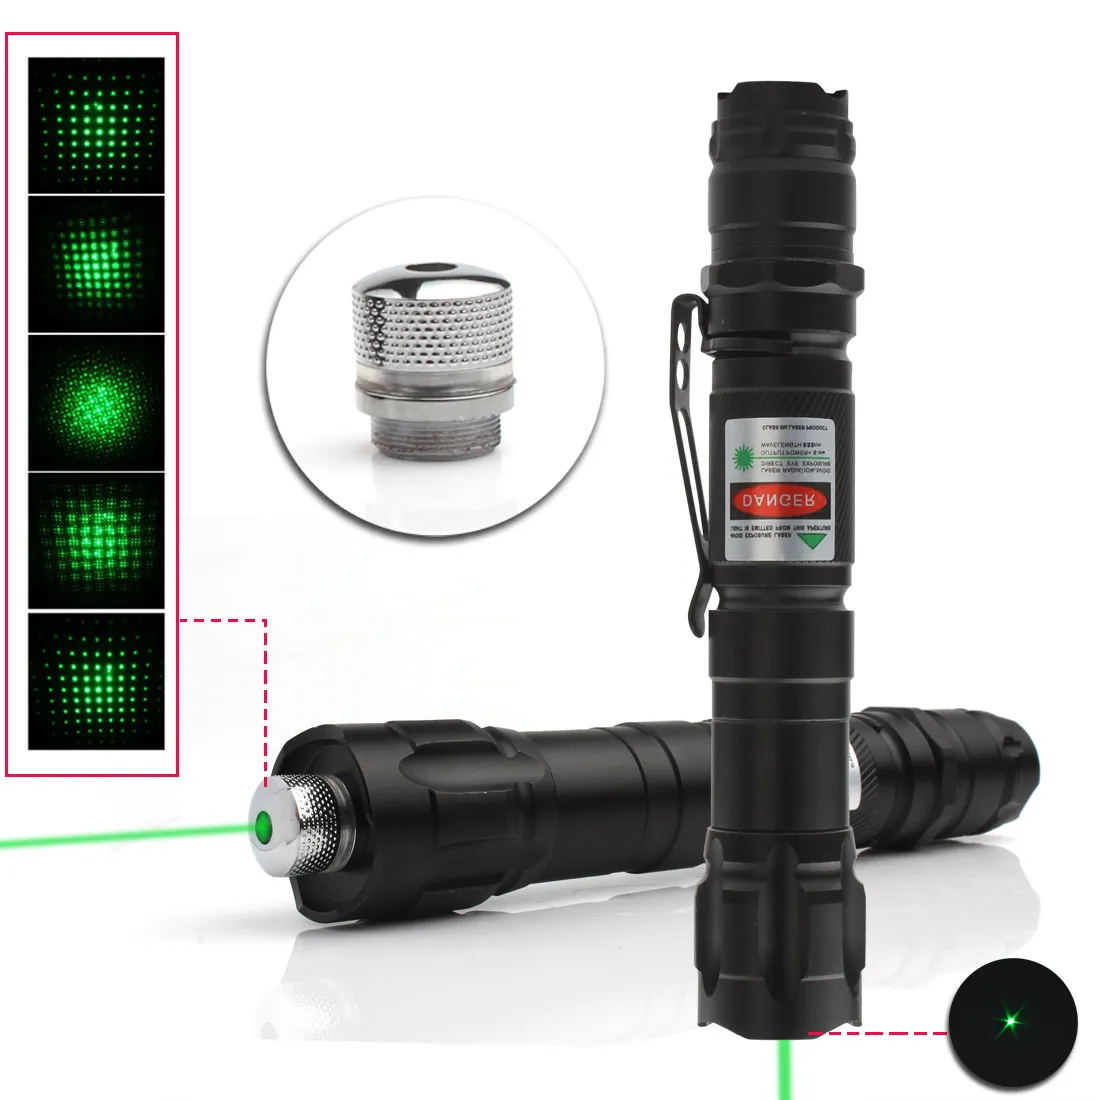 1 st 532nm tactische laser Grade groene wijzer sterke pen lasers zaklamp militaire krachtige clip twinkling ster laser pen gratis verzending